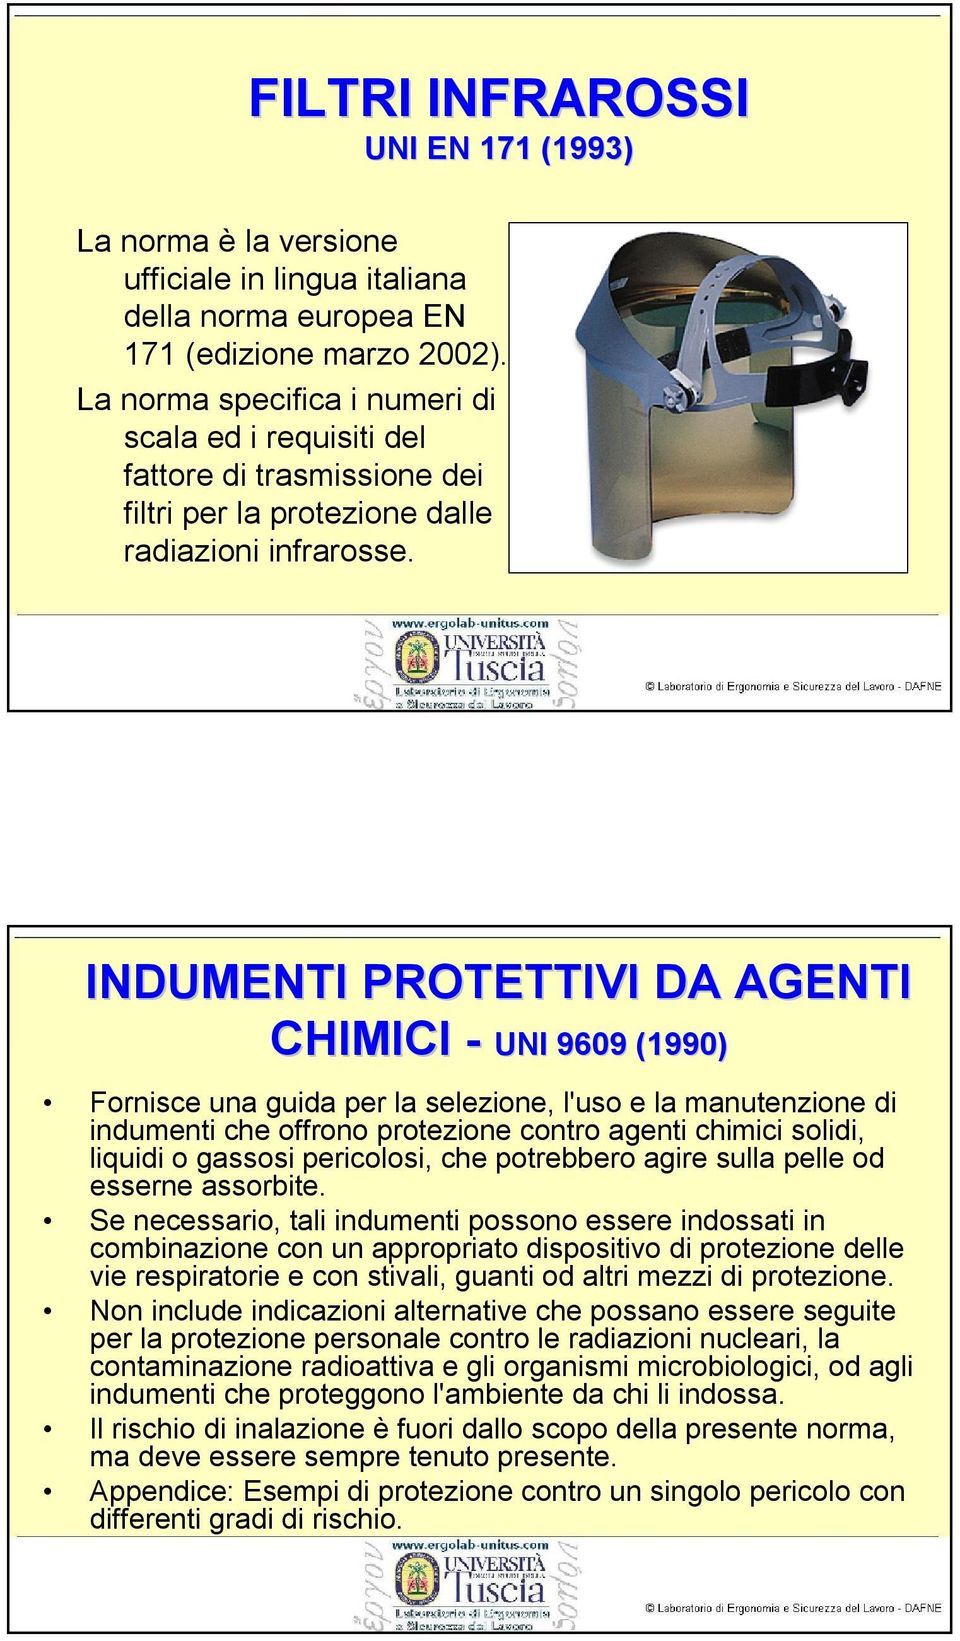 INDUMENTI PROTETTIVI DA AGENTI CHIMICI - UNI 9609 (1990) Fornisce una guida per la selezione, l'uso e la manutenzione di indumenti che offrono protezione contro agenti chimici solidi, liquidi o